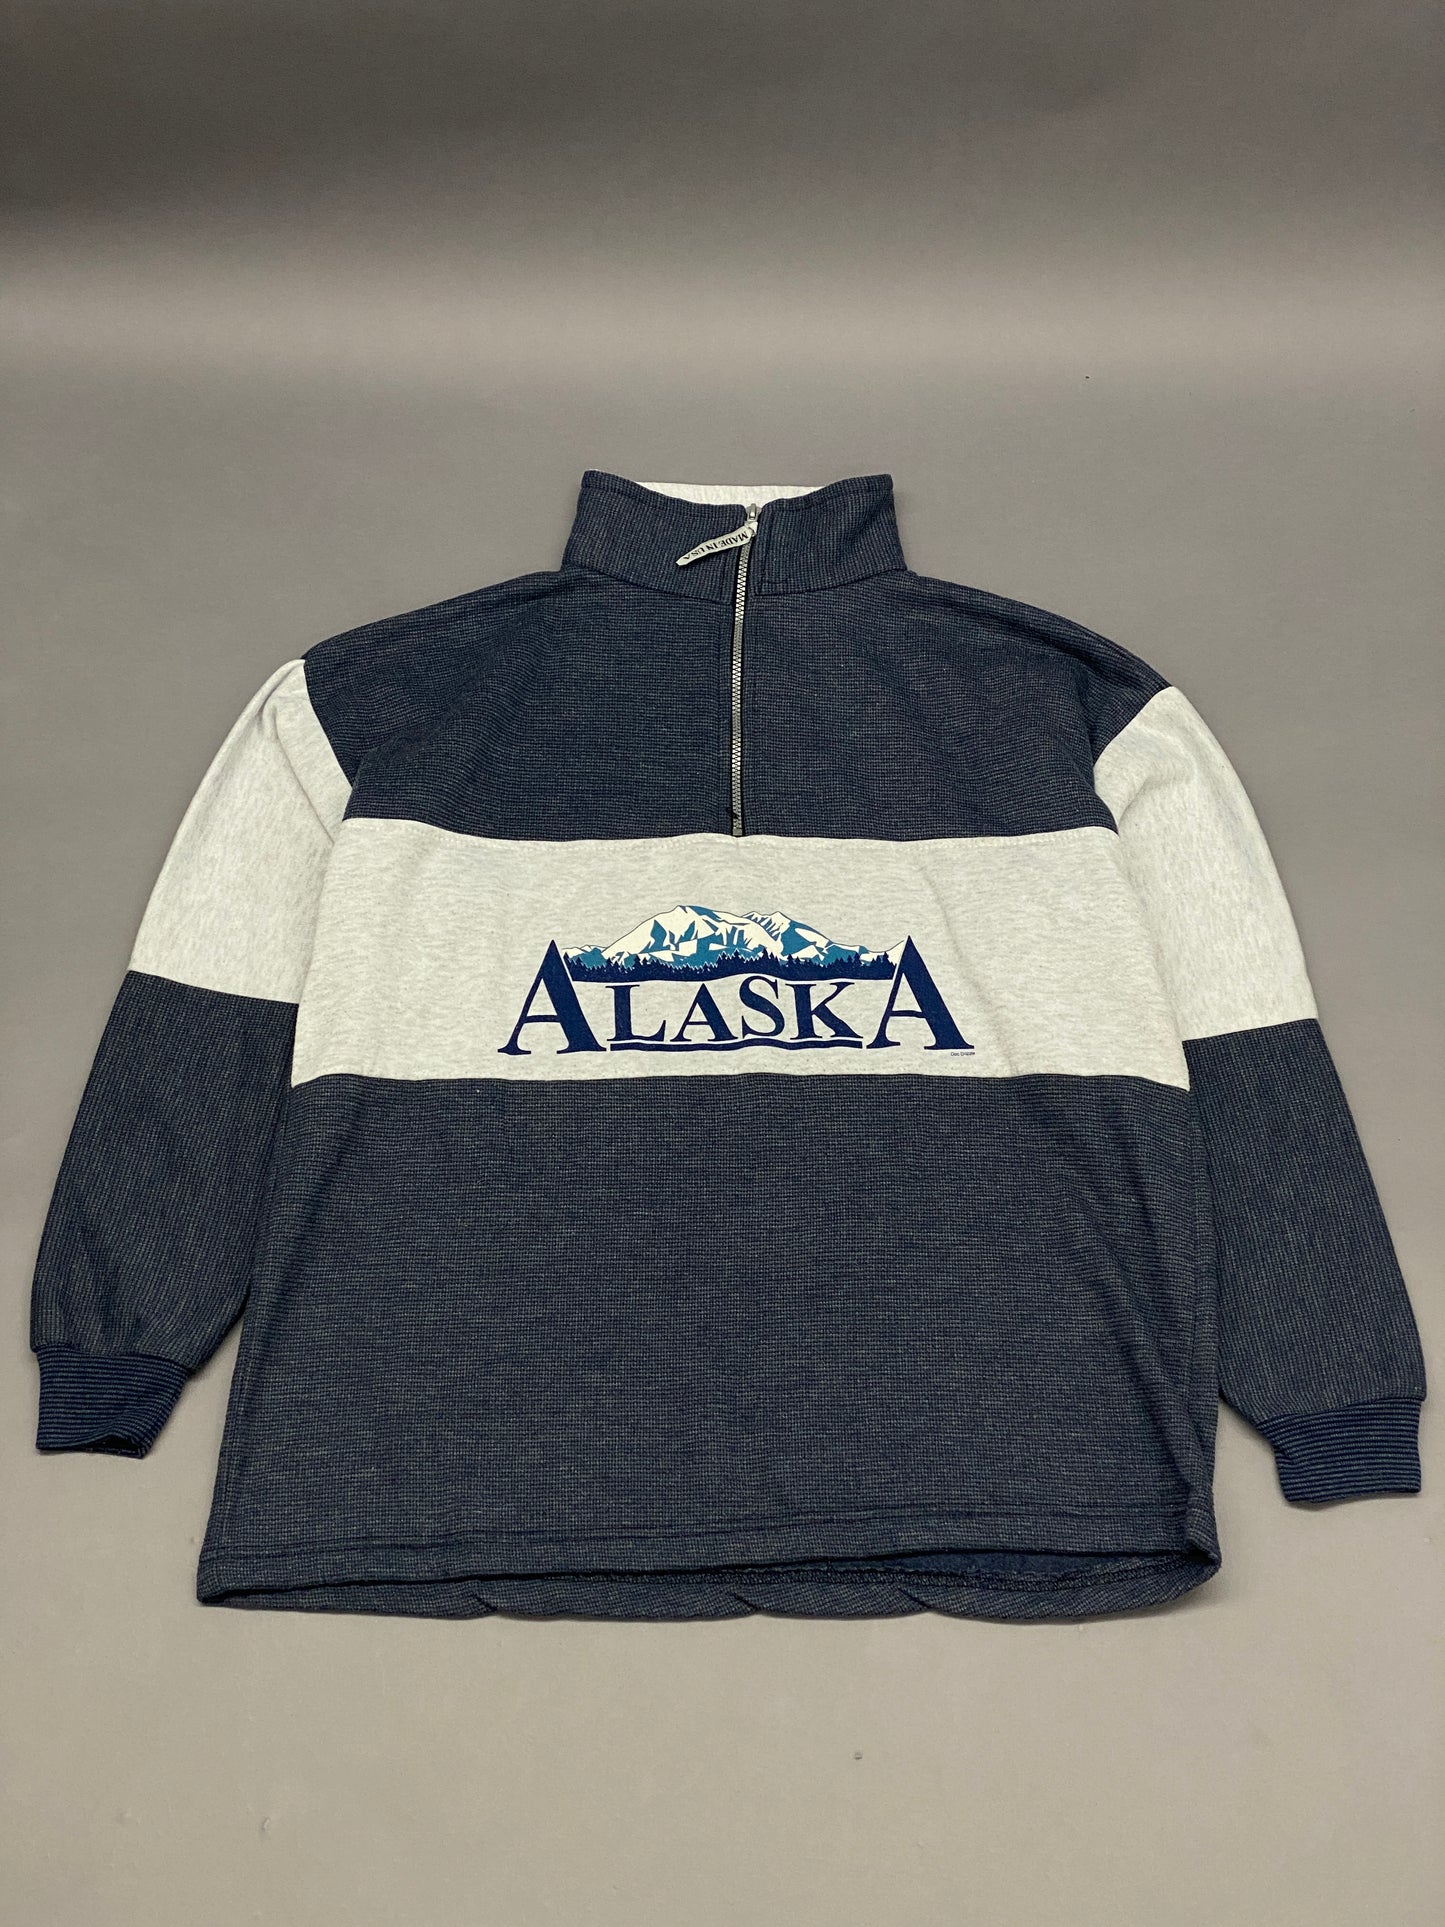 Alaska Vintage Half Zip Sweatshirt